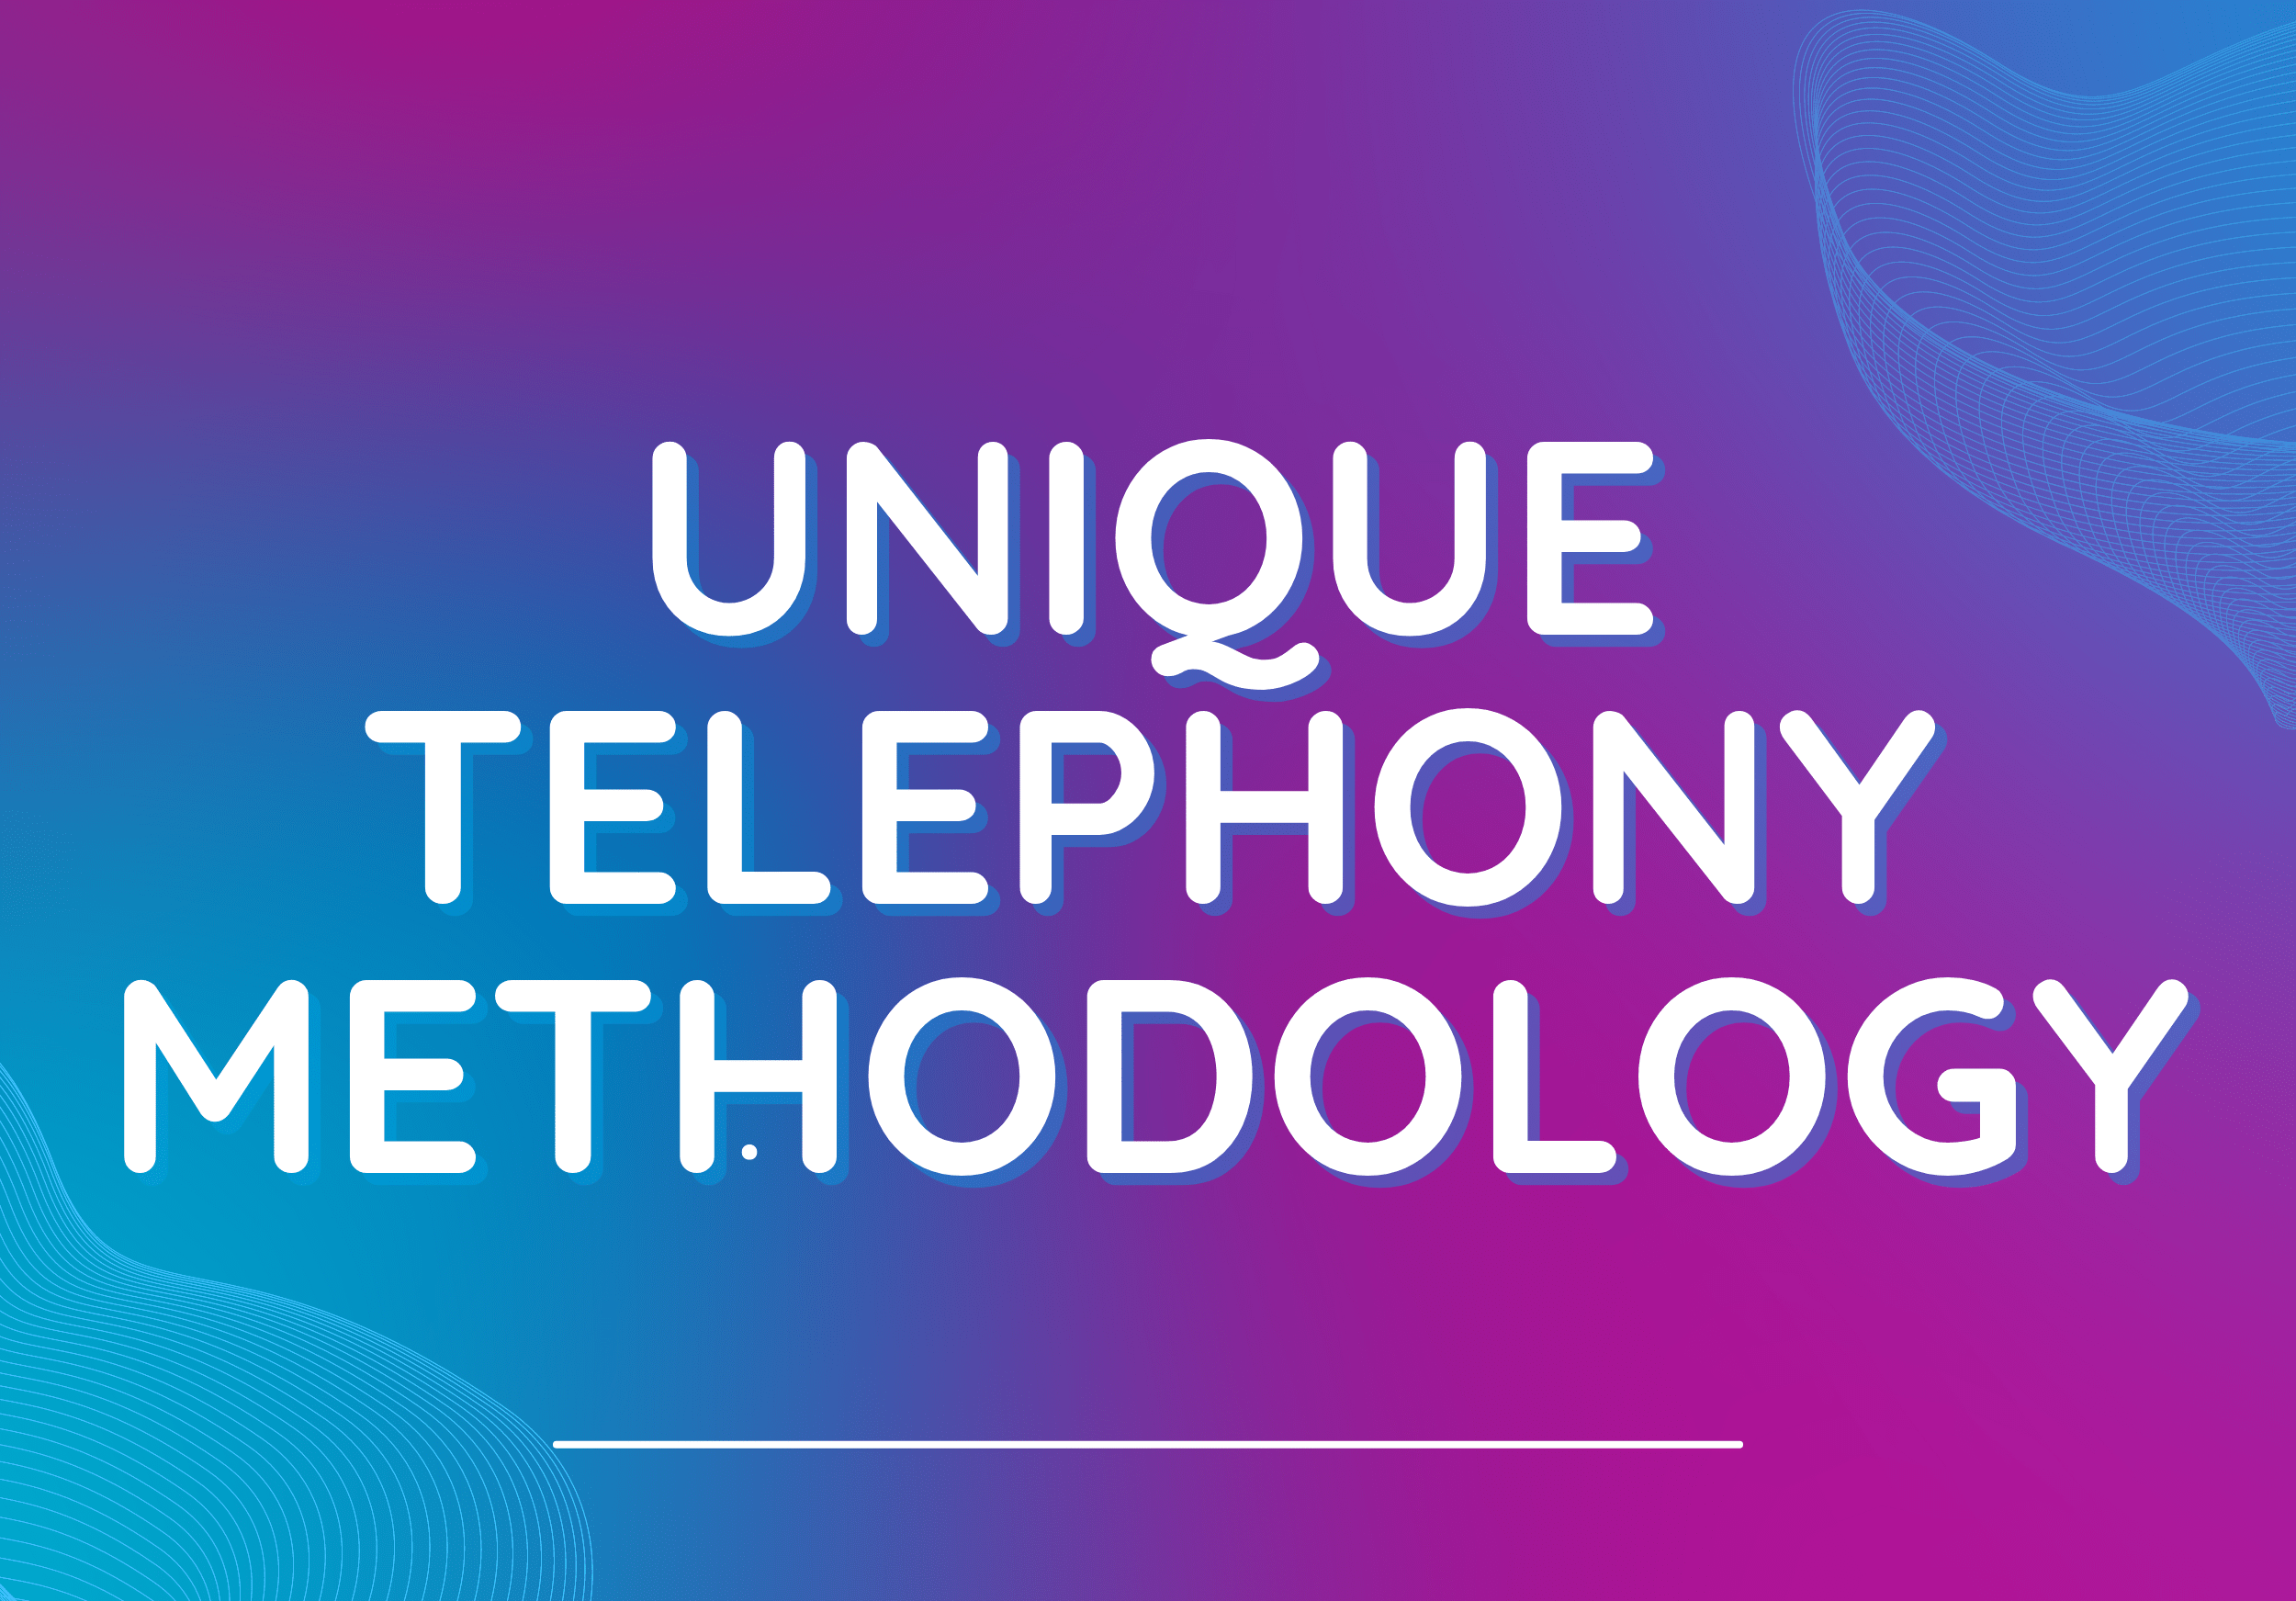 UNIQUE TELEPHONY